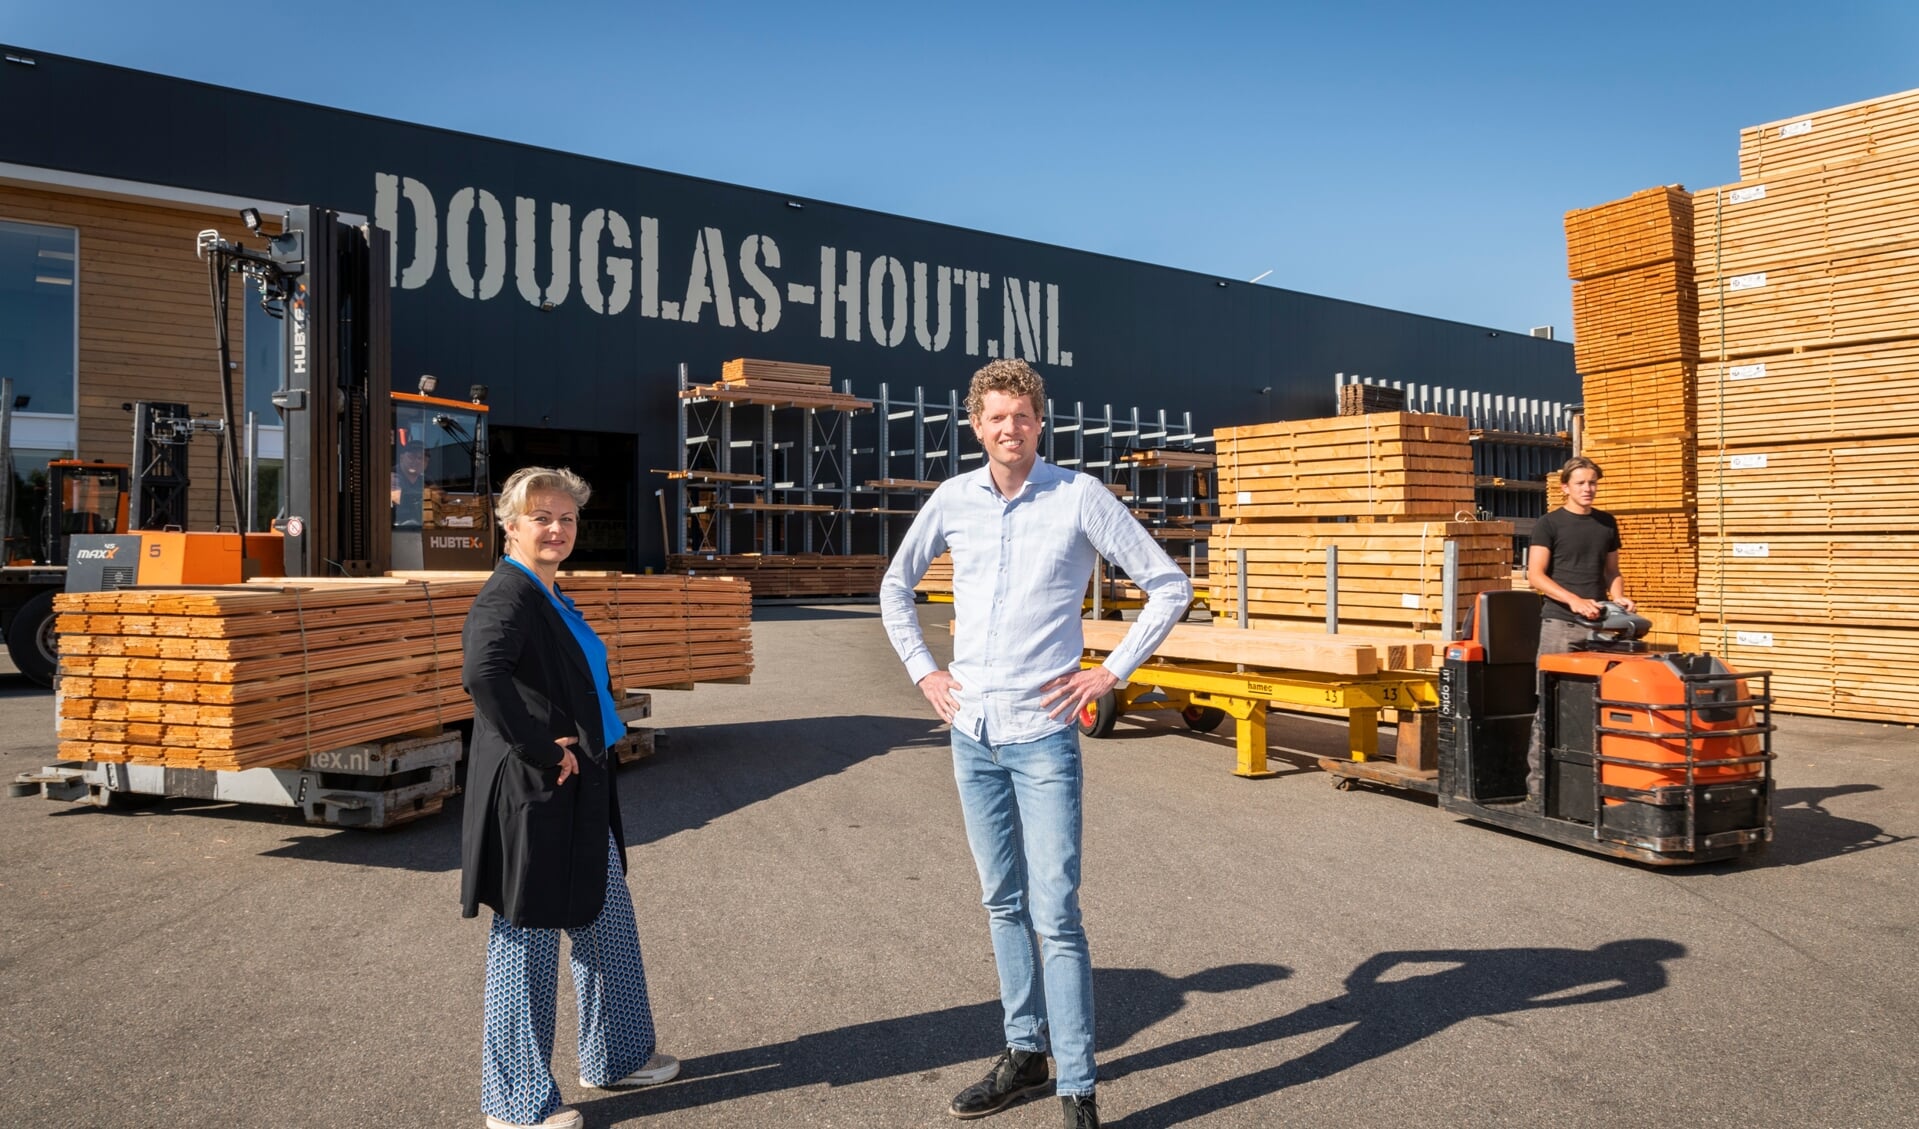 De bestellingen vliegen de deur uit bij Douglas-Hout.nl in Ede. Daarom kan het team versterking gebruiken.